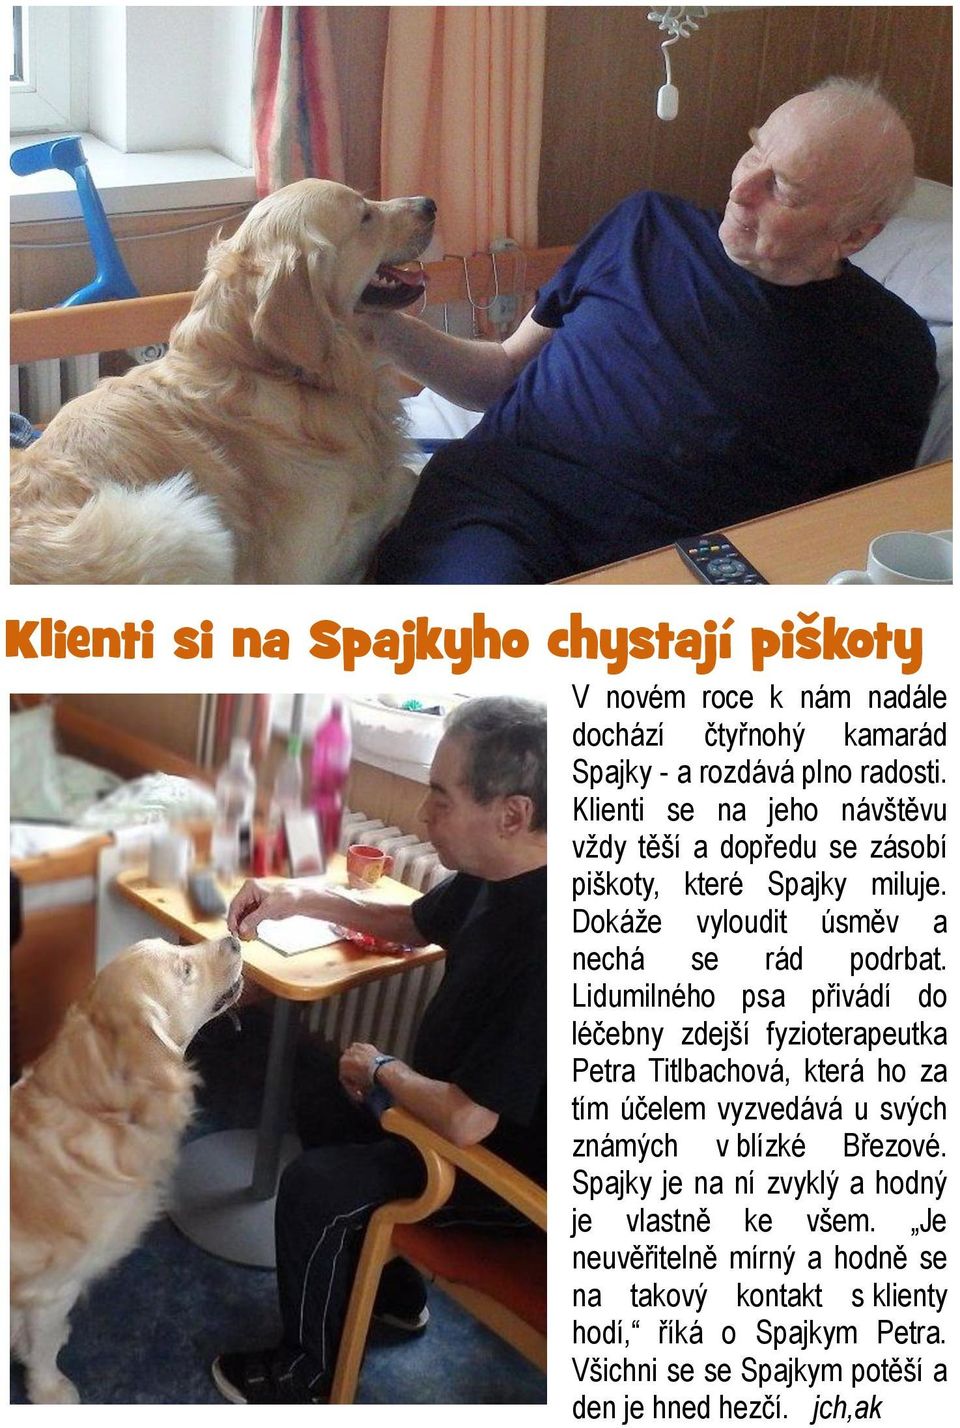 Lidumilného psa přivádí do léčebny zdejší fyzioterapeutka Petra Titlbachová, která ho za tím účelem vyzvedává u svých známých v blízké Březové.